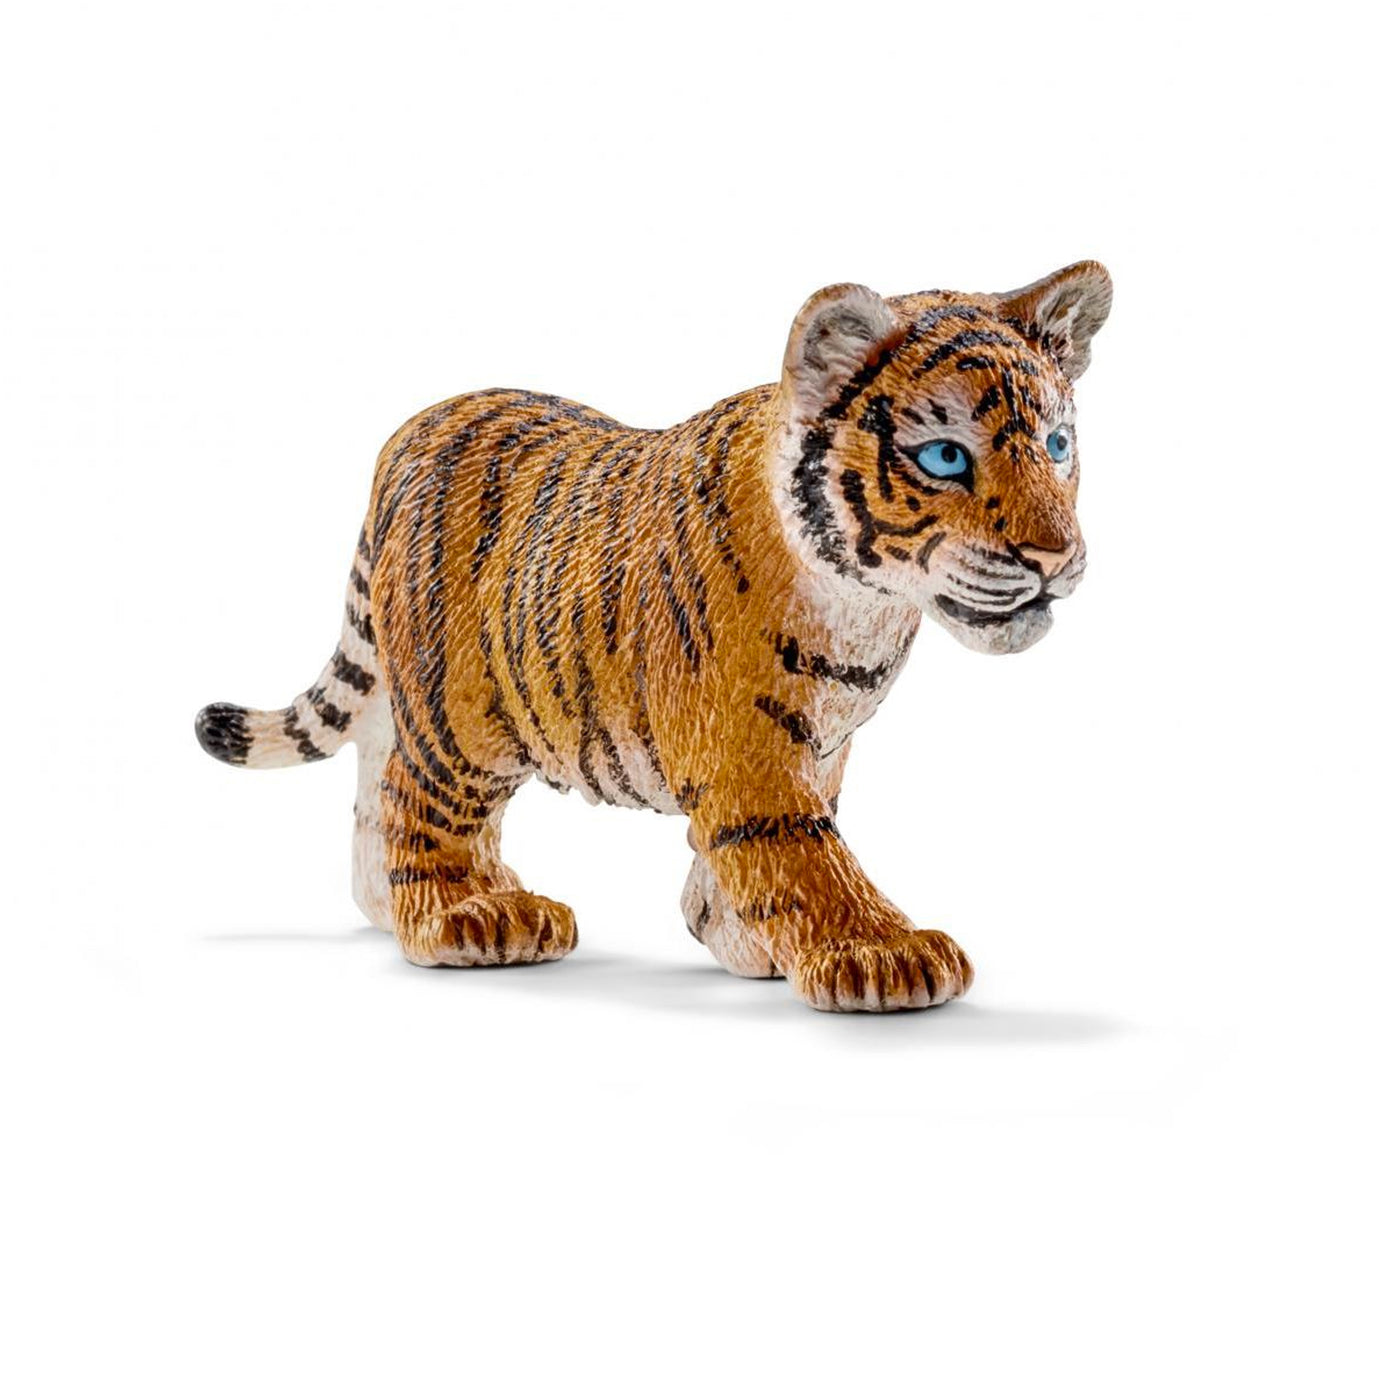 Schleich Wild Life Tiger Cub Toy Figurine